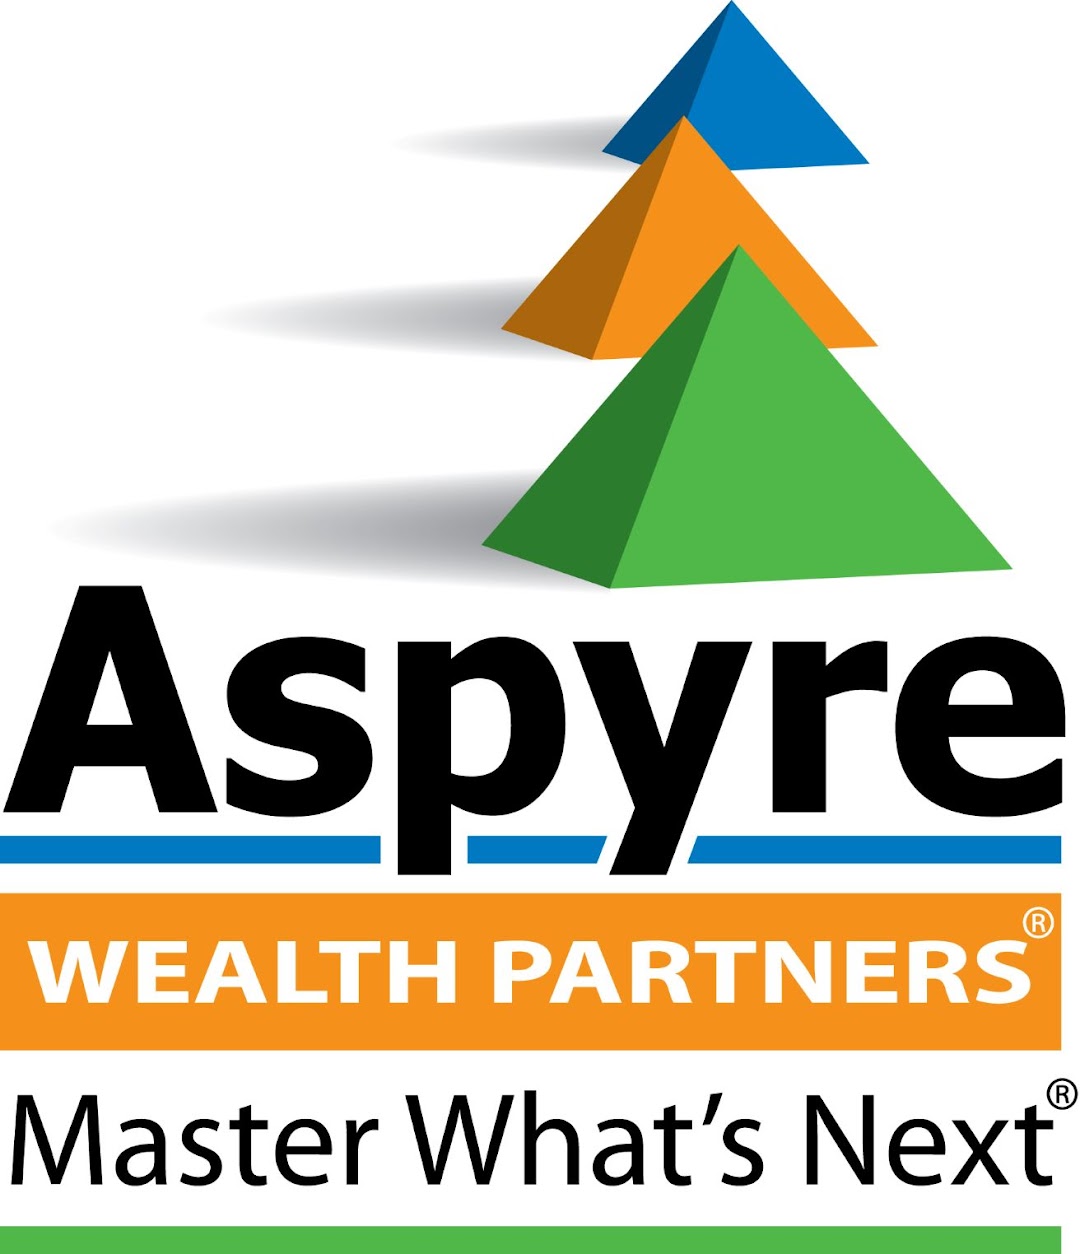 Aspyre Wealth Partners